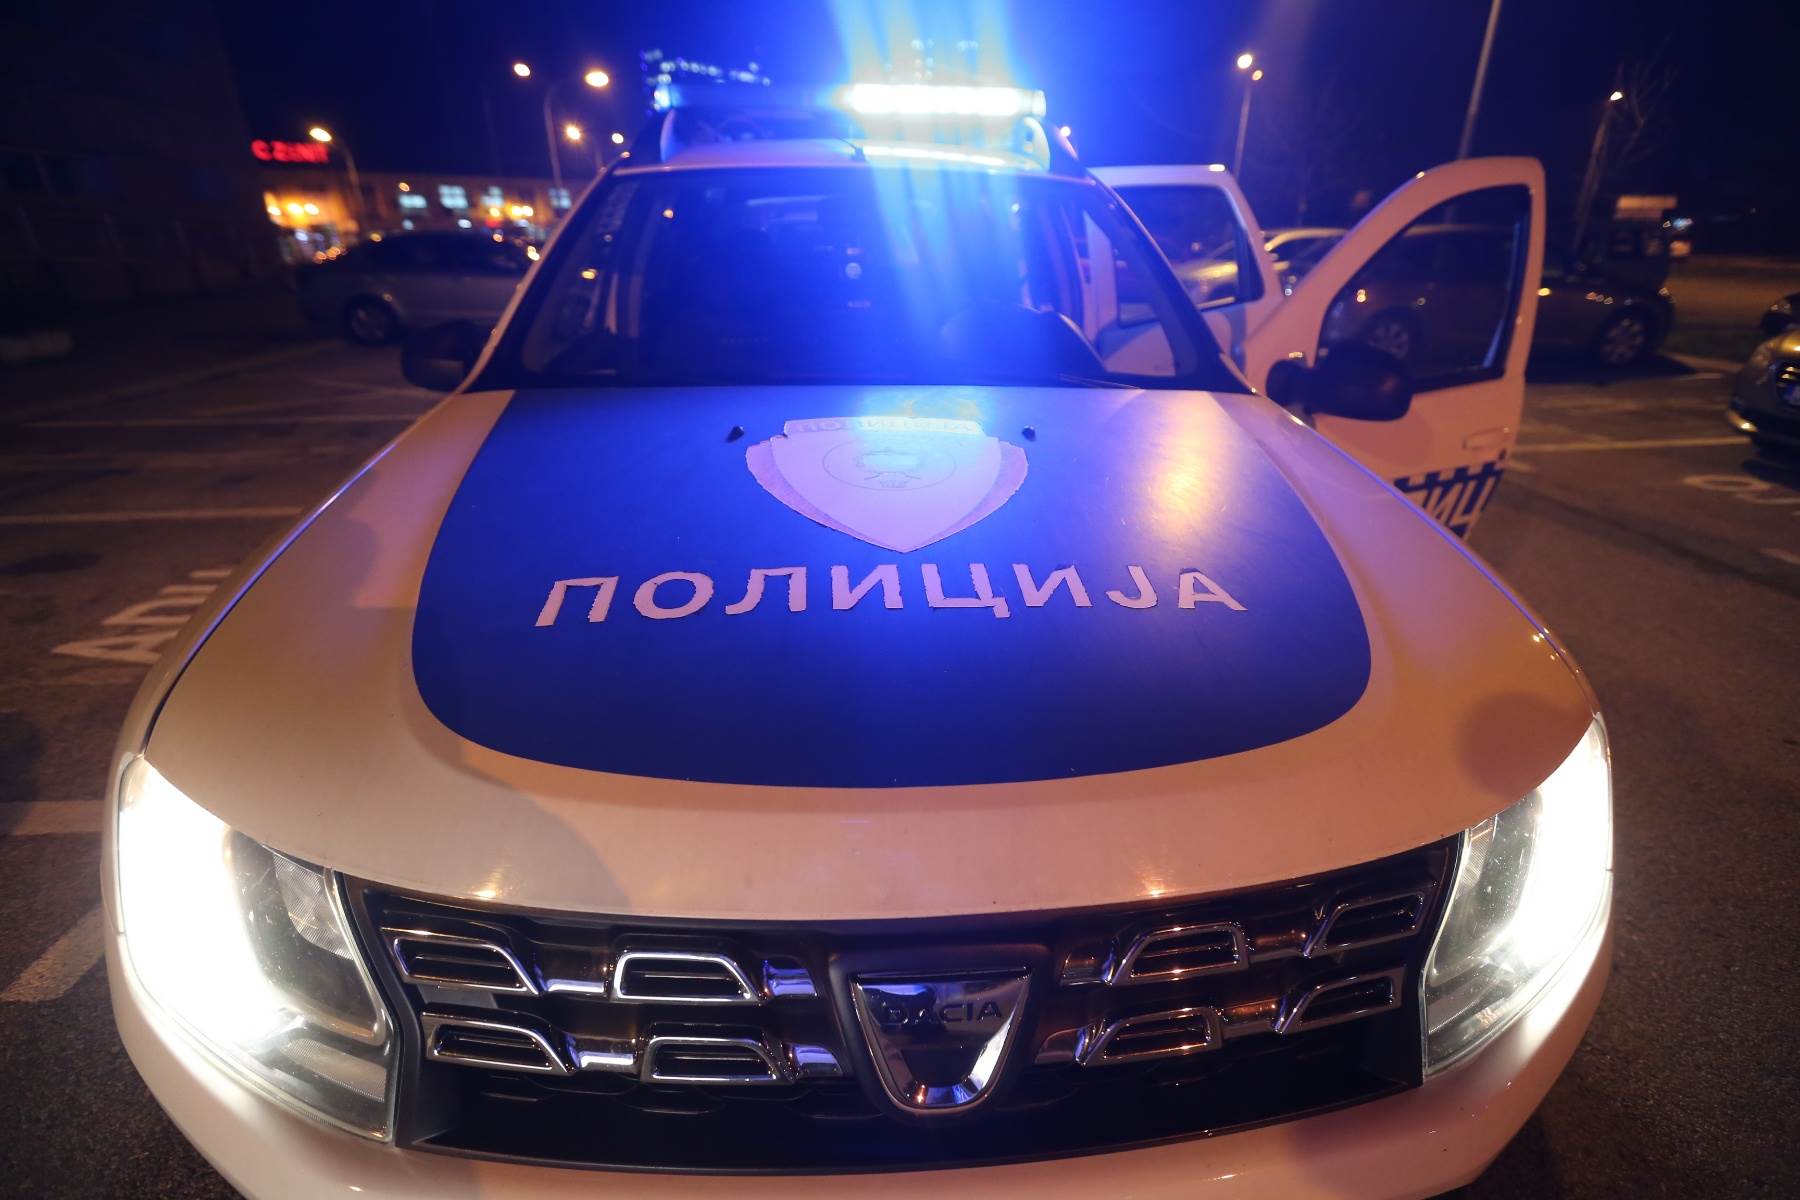  Dvije policijske vježbe u RS: Jedna na Jahoroni, druga kod Mrkonjić Grada 